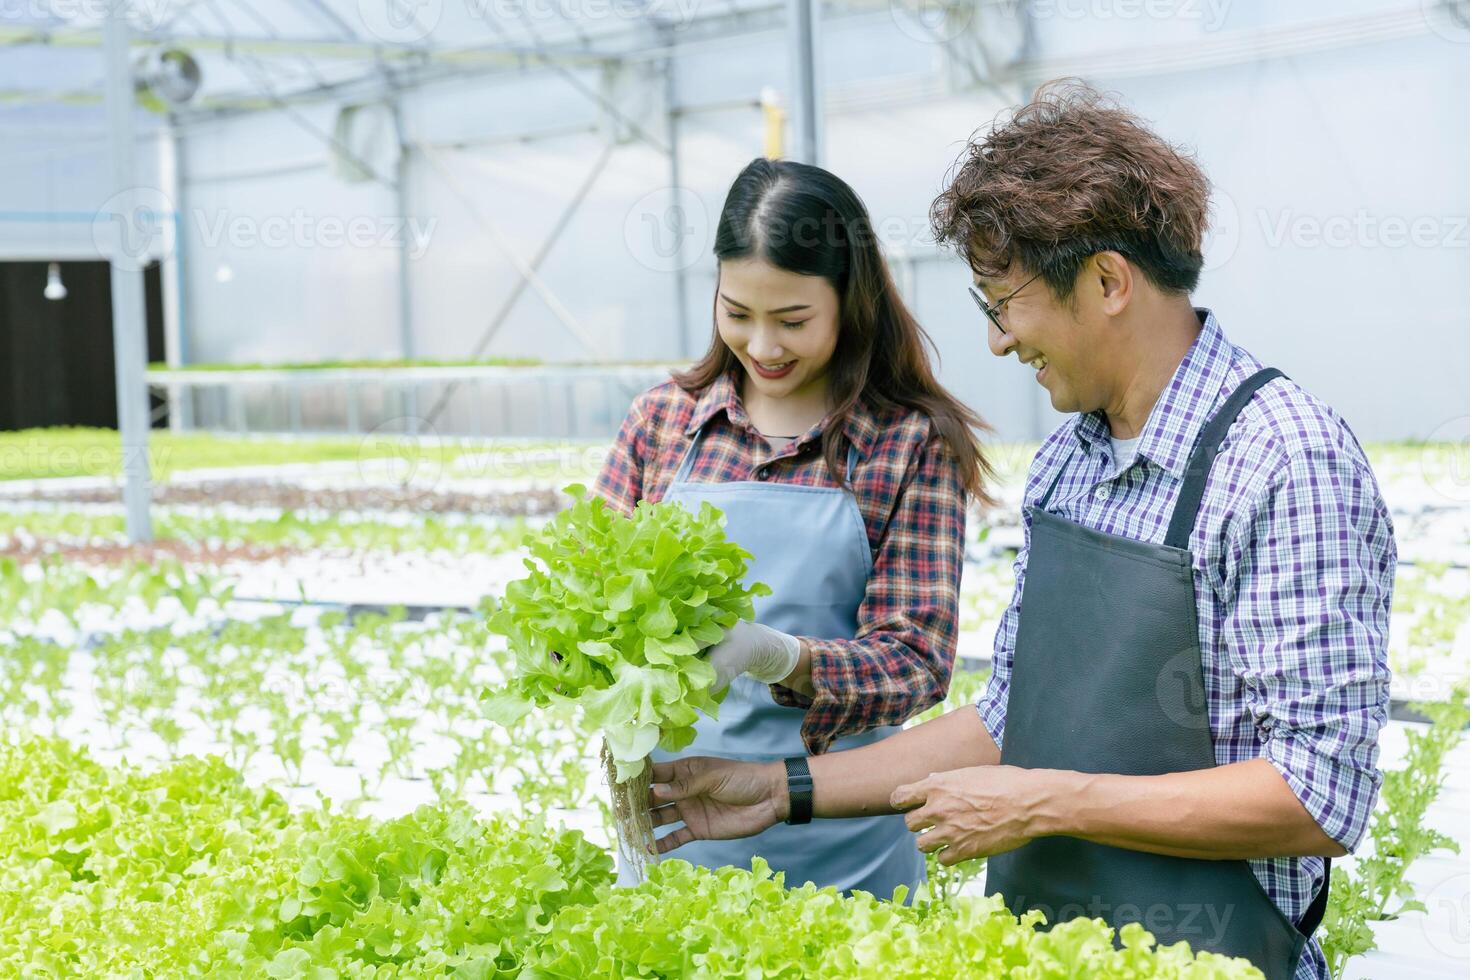 mensen met hydrocultuur biologisch boerderij groen eik sla salade groeien. paar jong landbouw bedrijf opstarten werken samen gelukkig glimlach met groente fabriek gewassen Product foto